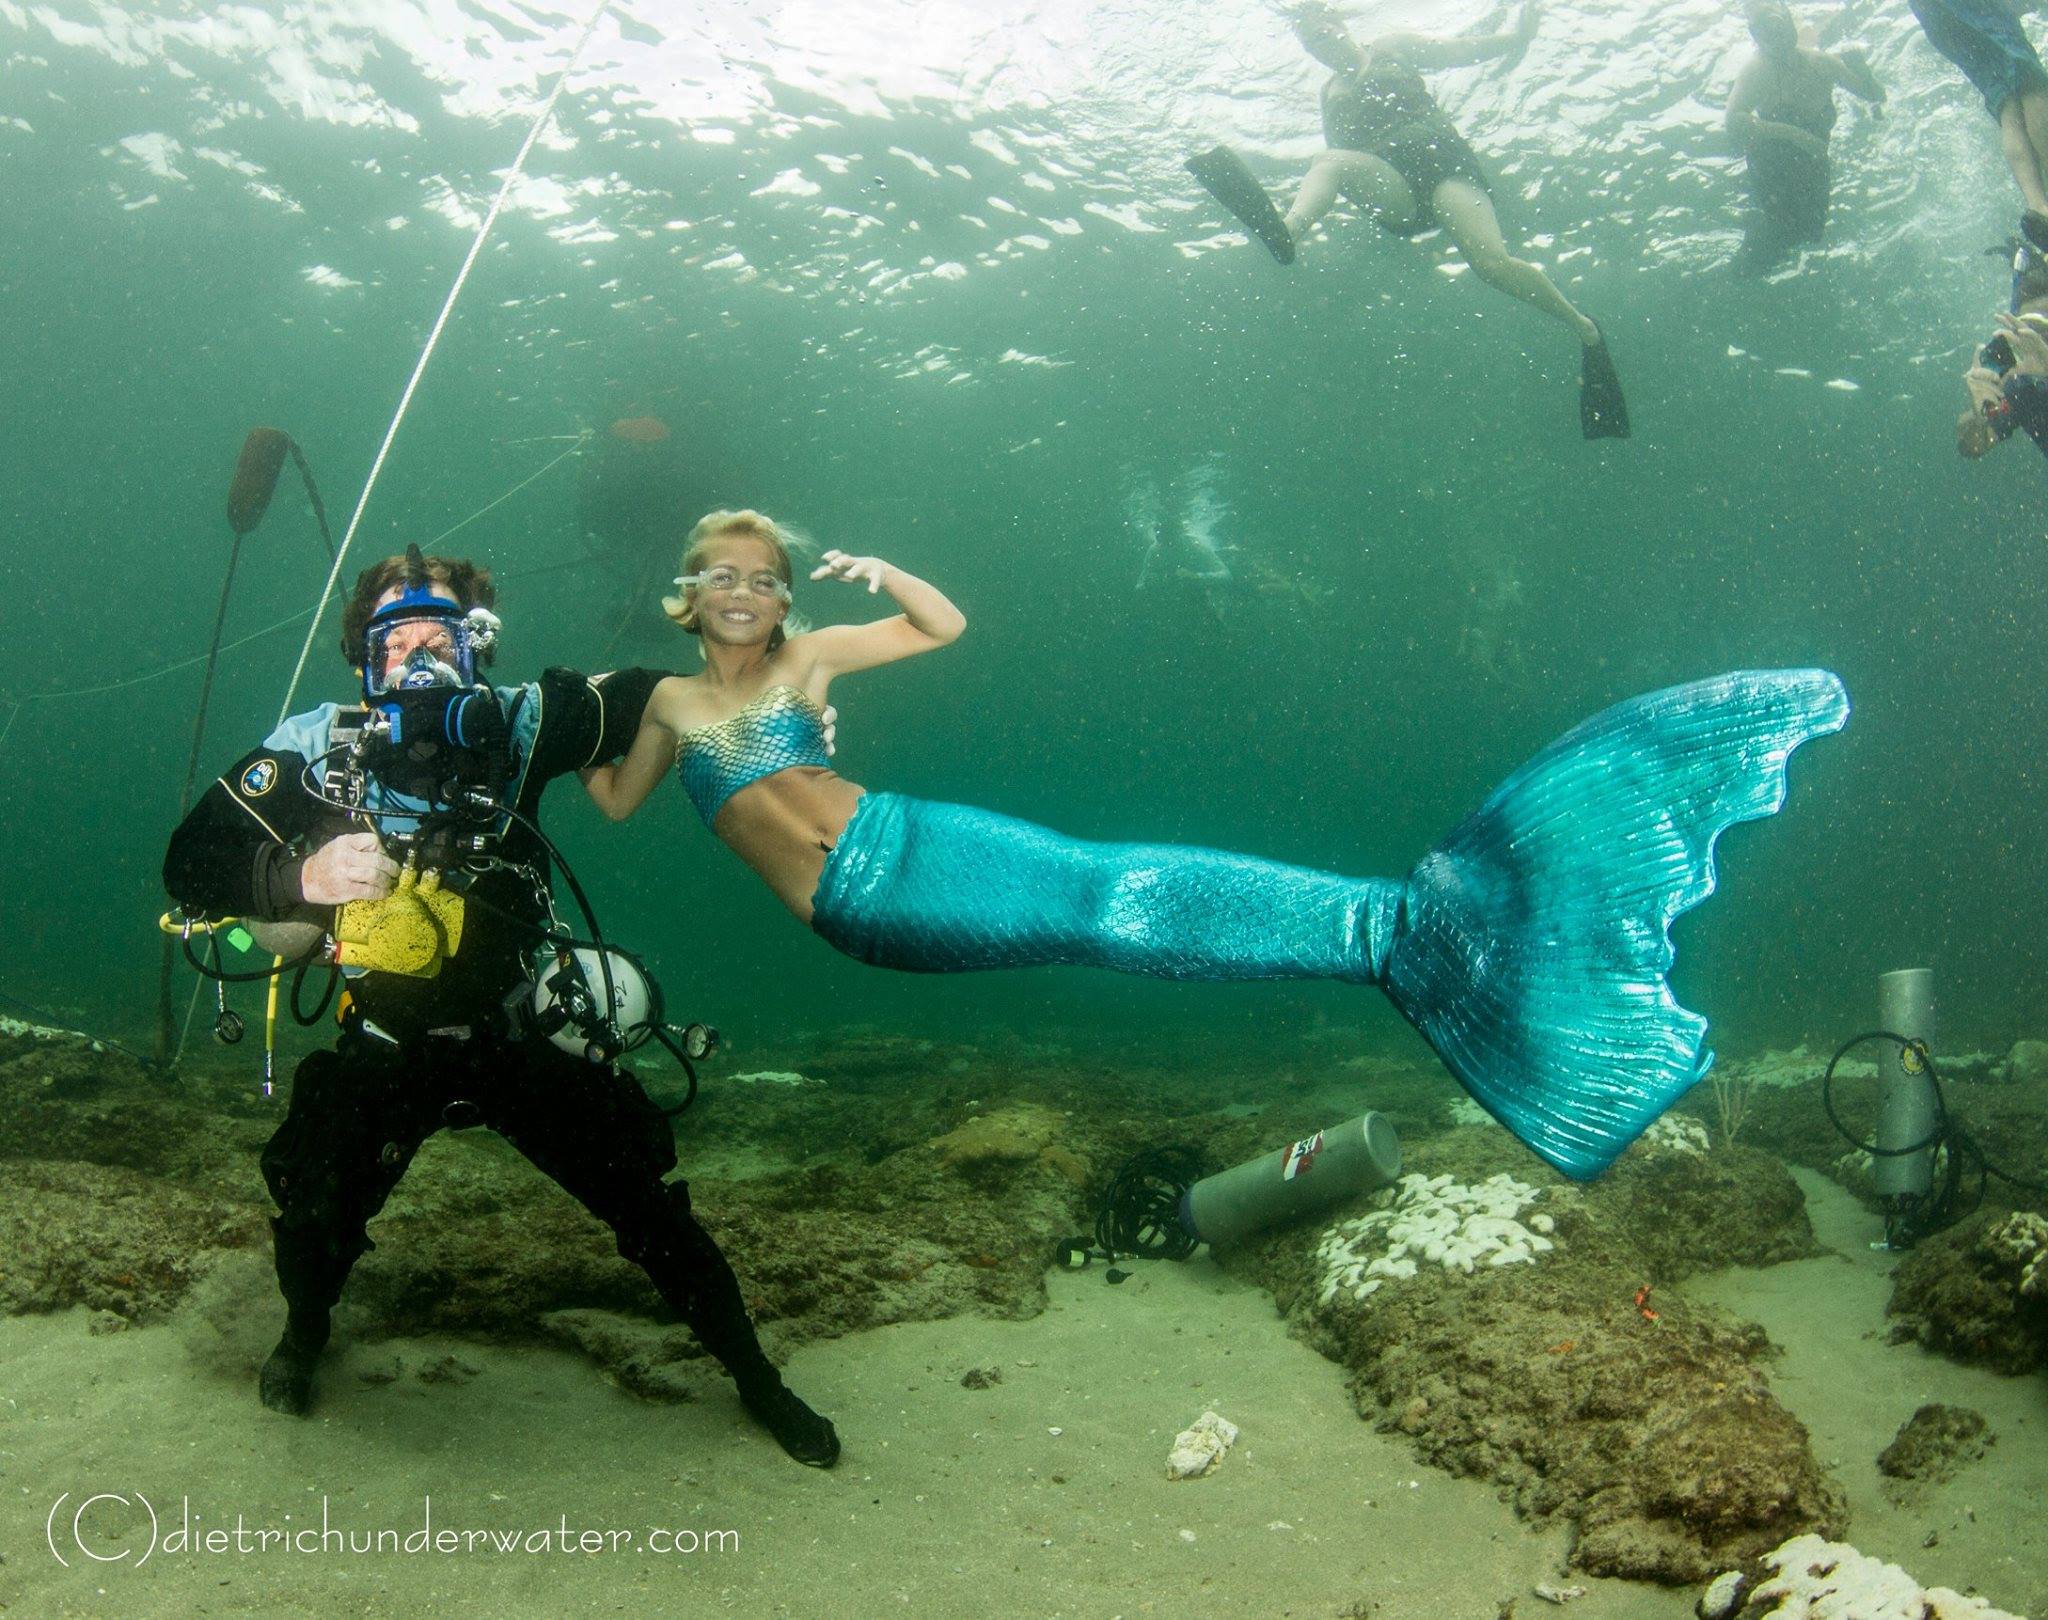 Allen underwater in SCUBA gear with Mermaid Paige